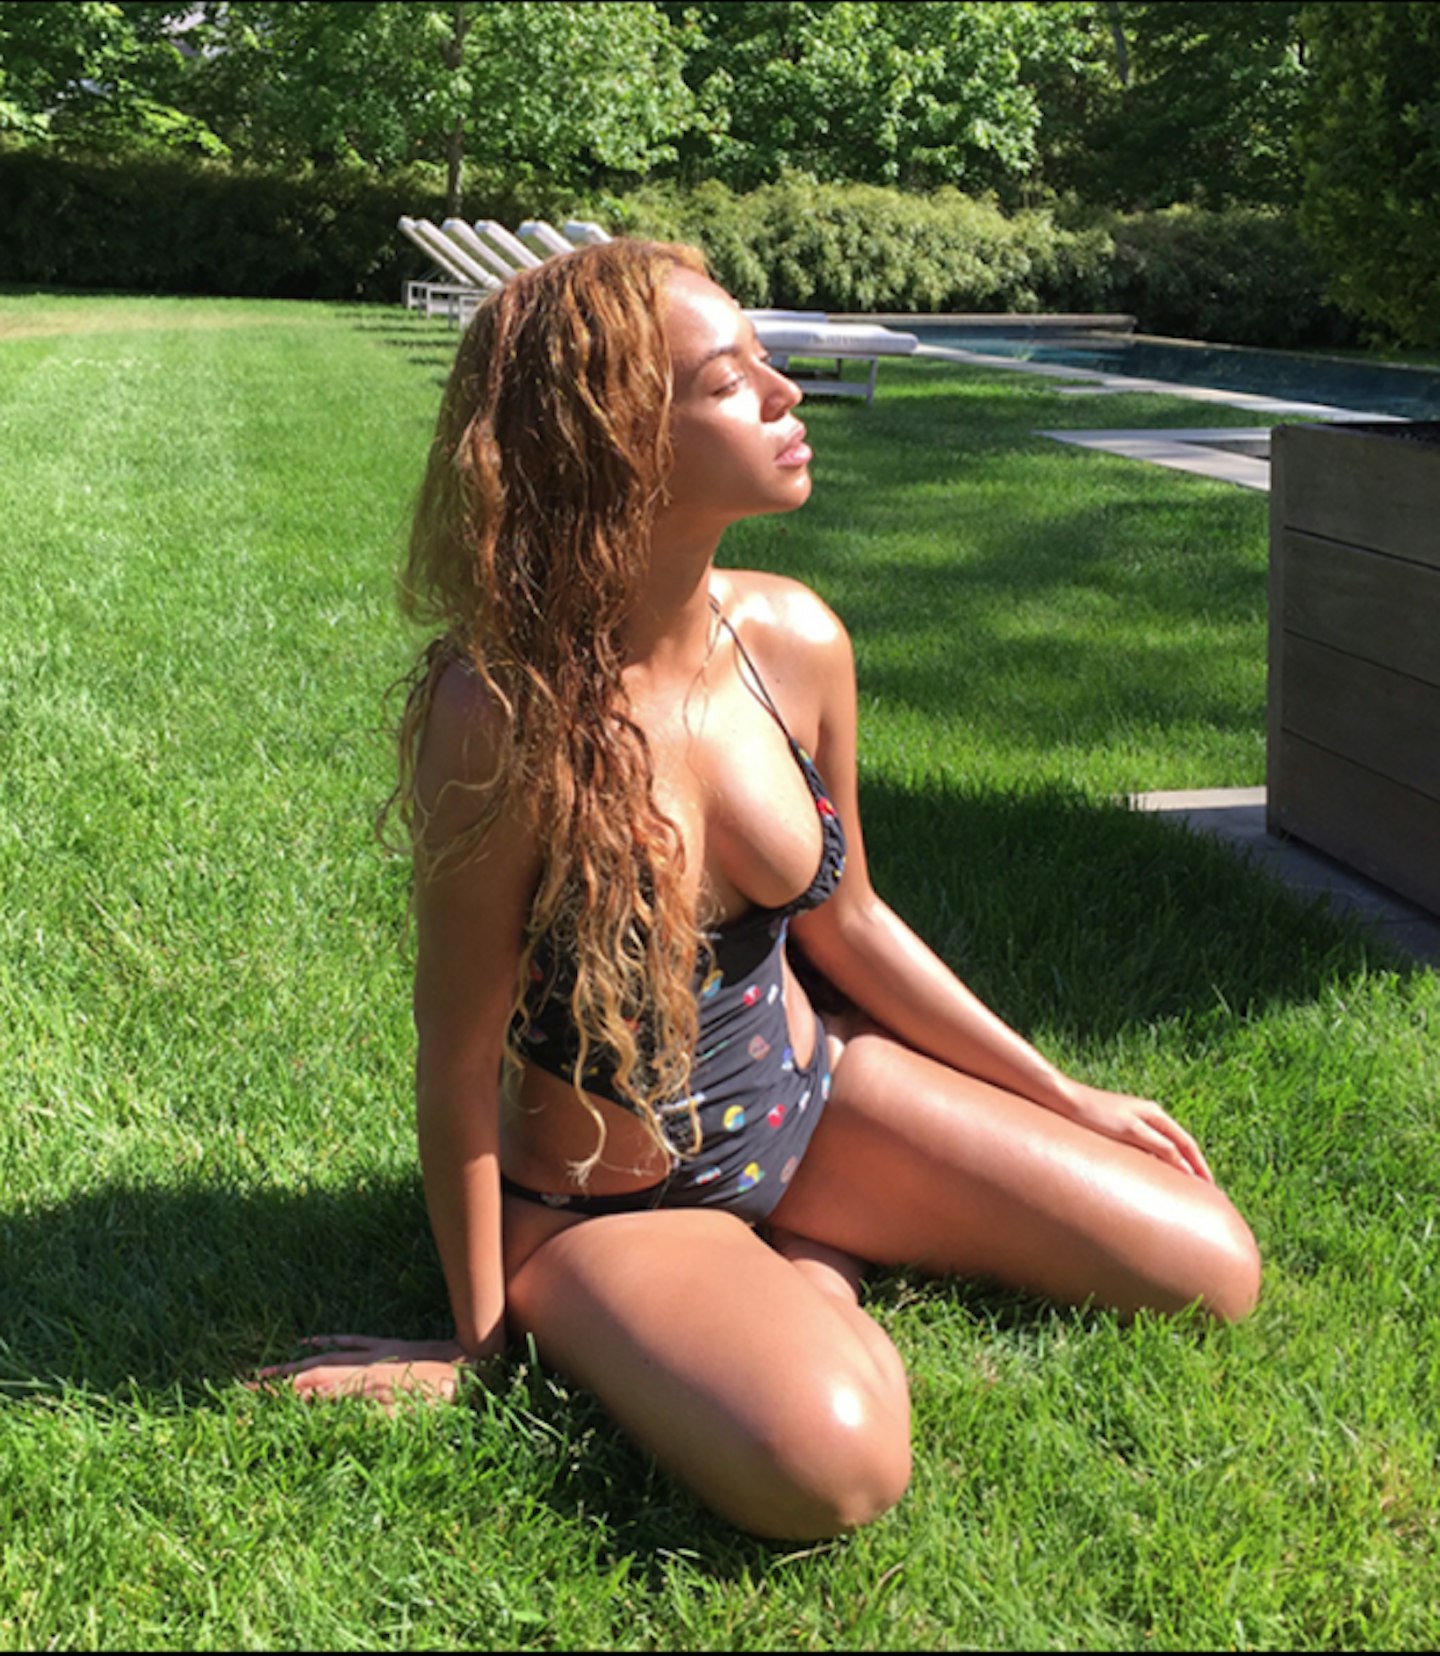 Tuesday: Beyonce